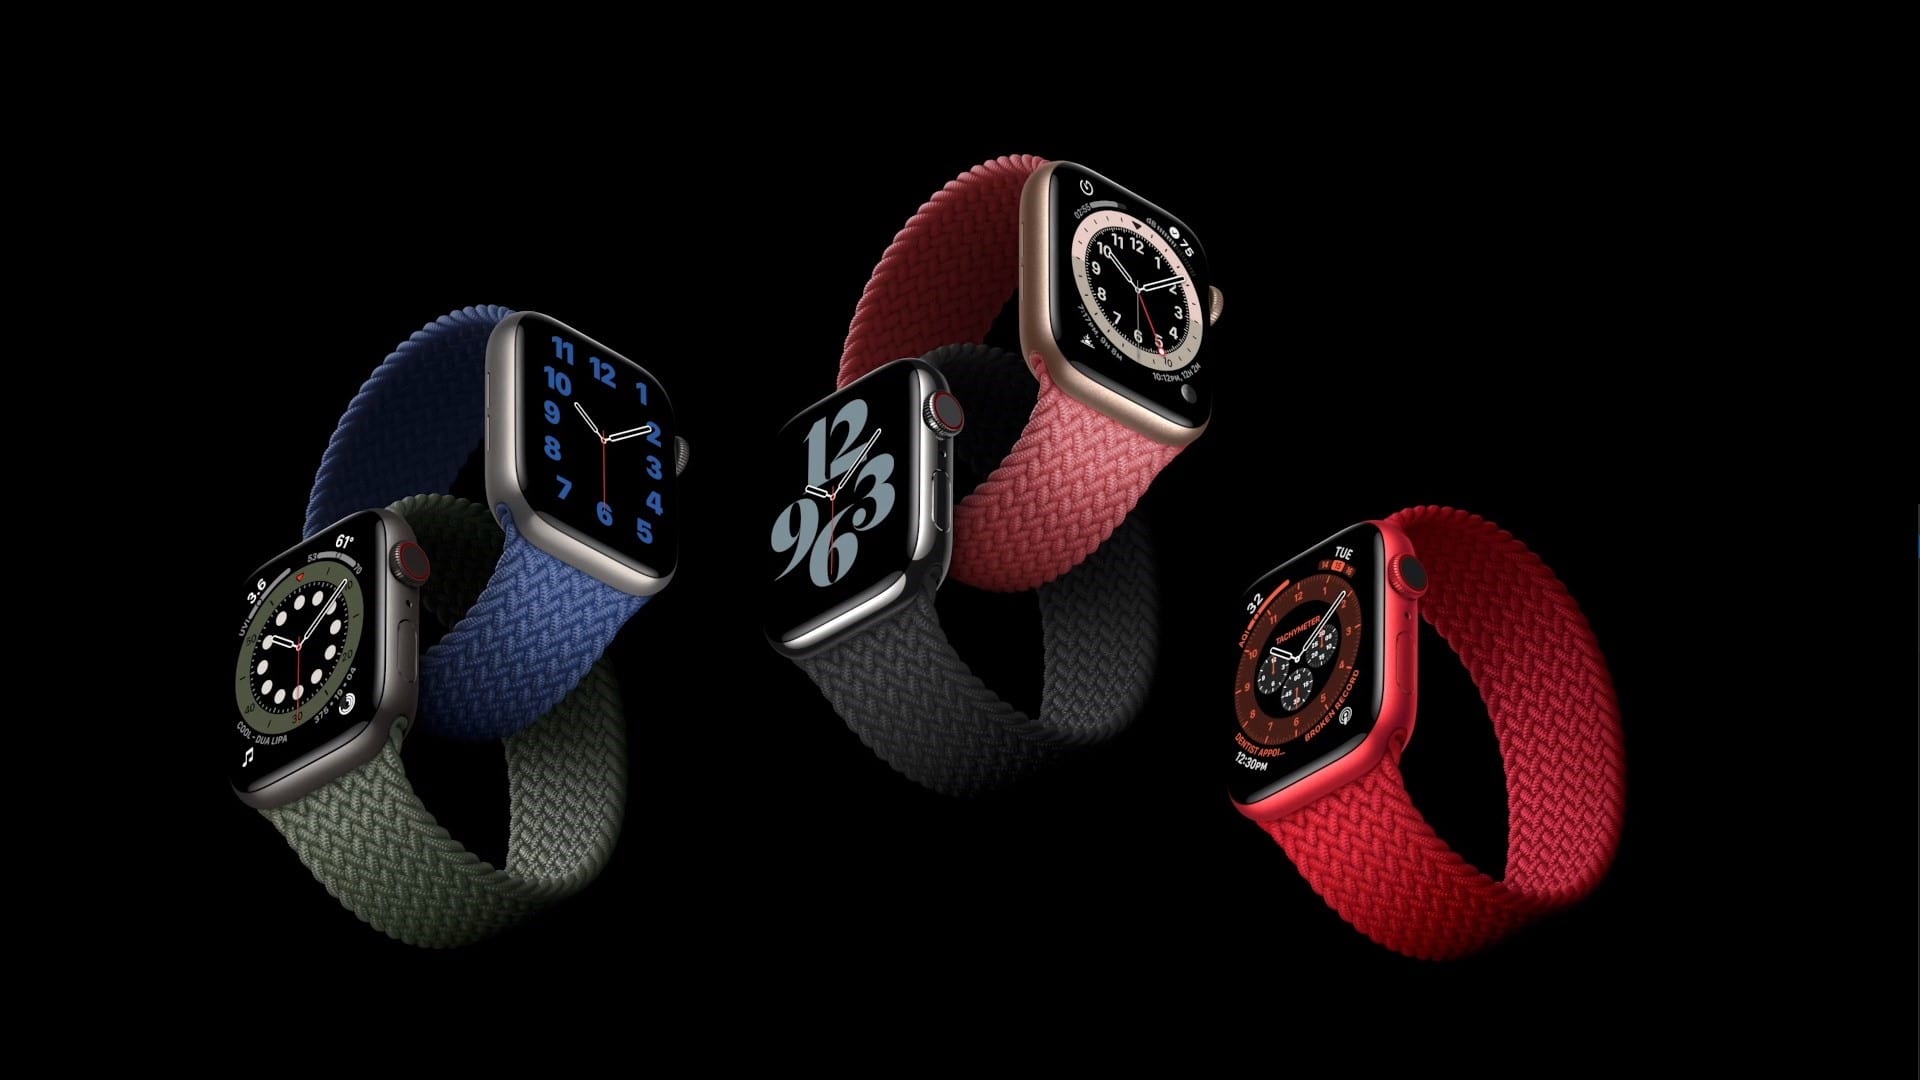 Novo Apple Watch Series 6 mede nível de oxigênio no sangue 1